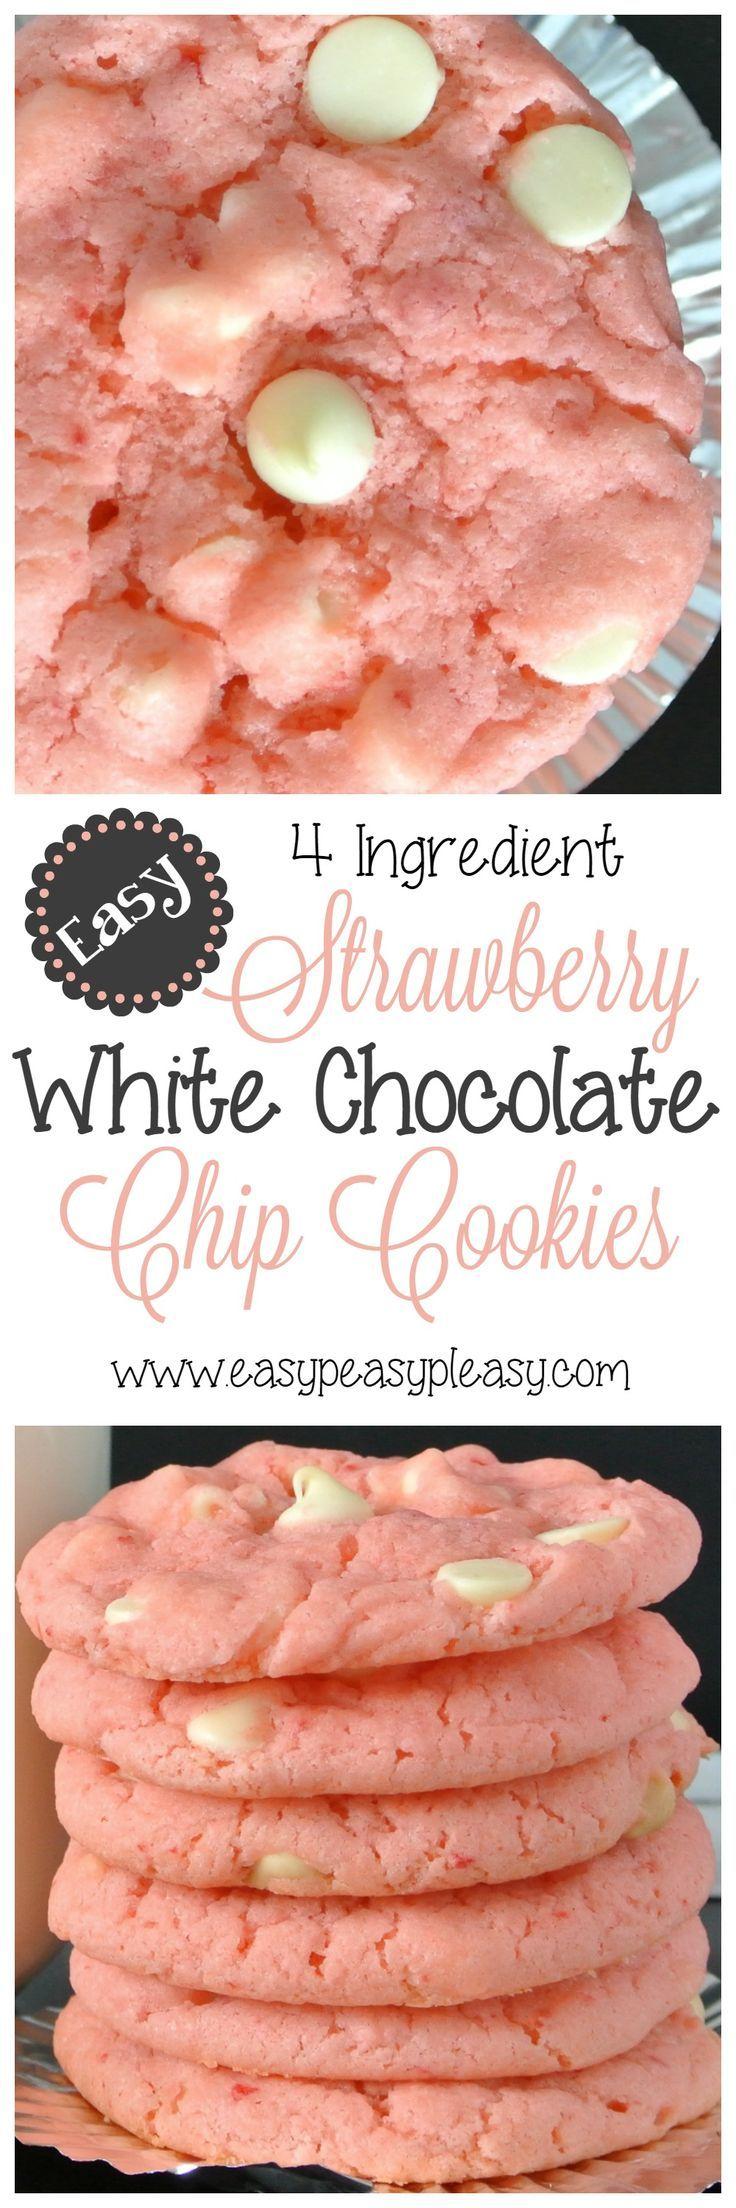 Hochzeit - 4 Ingredient Strawberry White Chocolate Chip Cookies